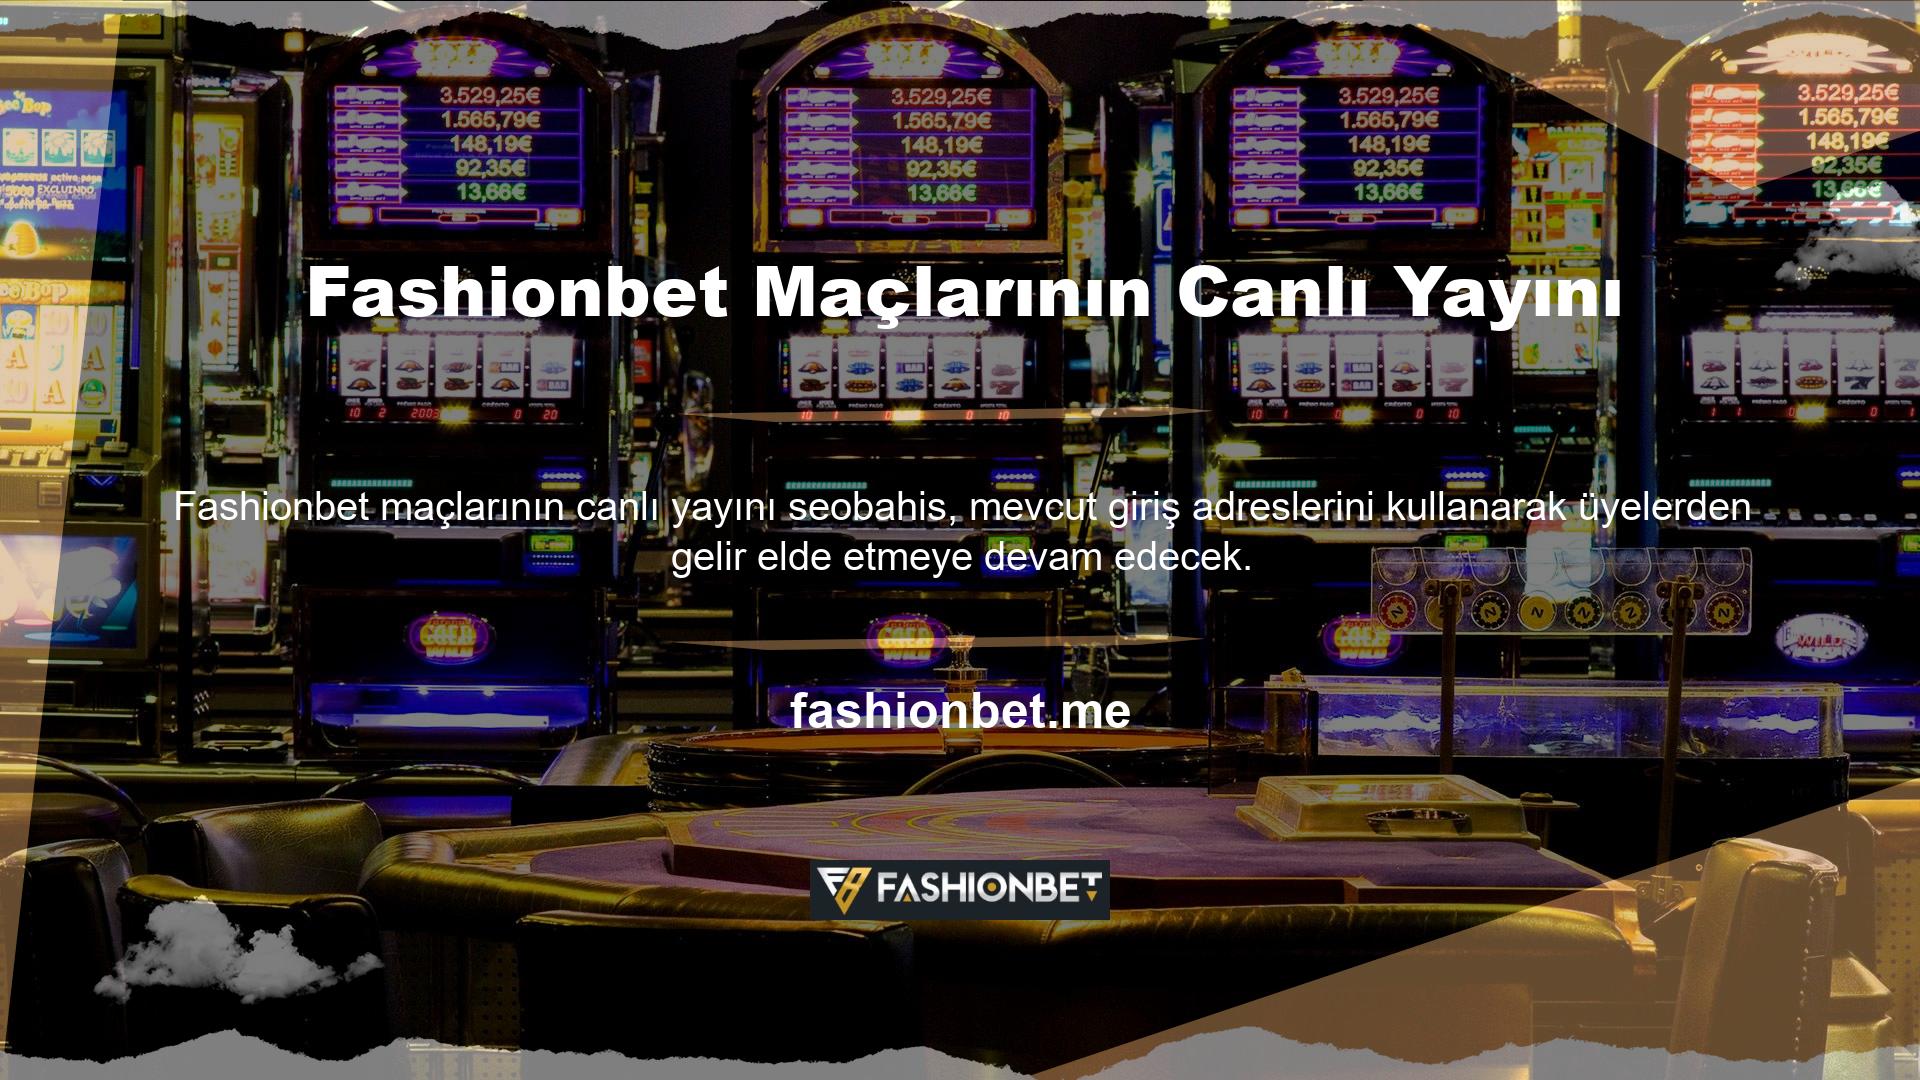 Fashionbet, canlı oyun yayınları yapan, oldukça istikrarlı bir site ve lisanslı oyunlara sahip, kurulduğu günden bu yana birçok insanı siteye çeken bir çevrimiçi bahis ve casino sitesidir